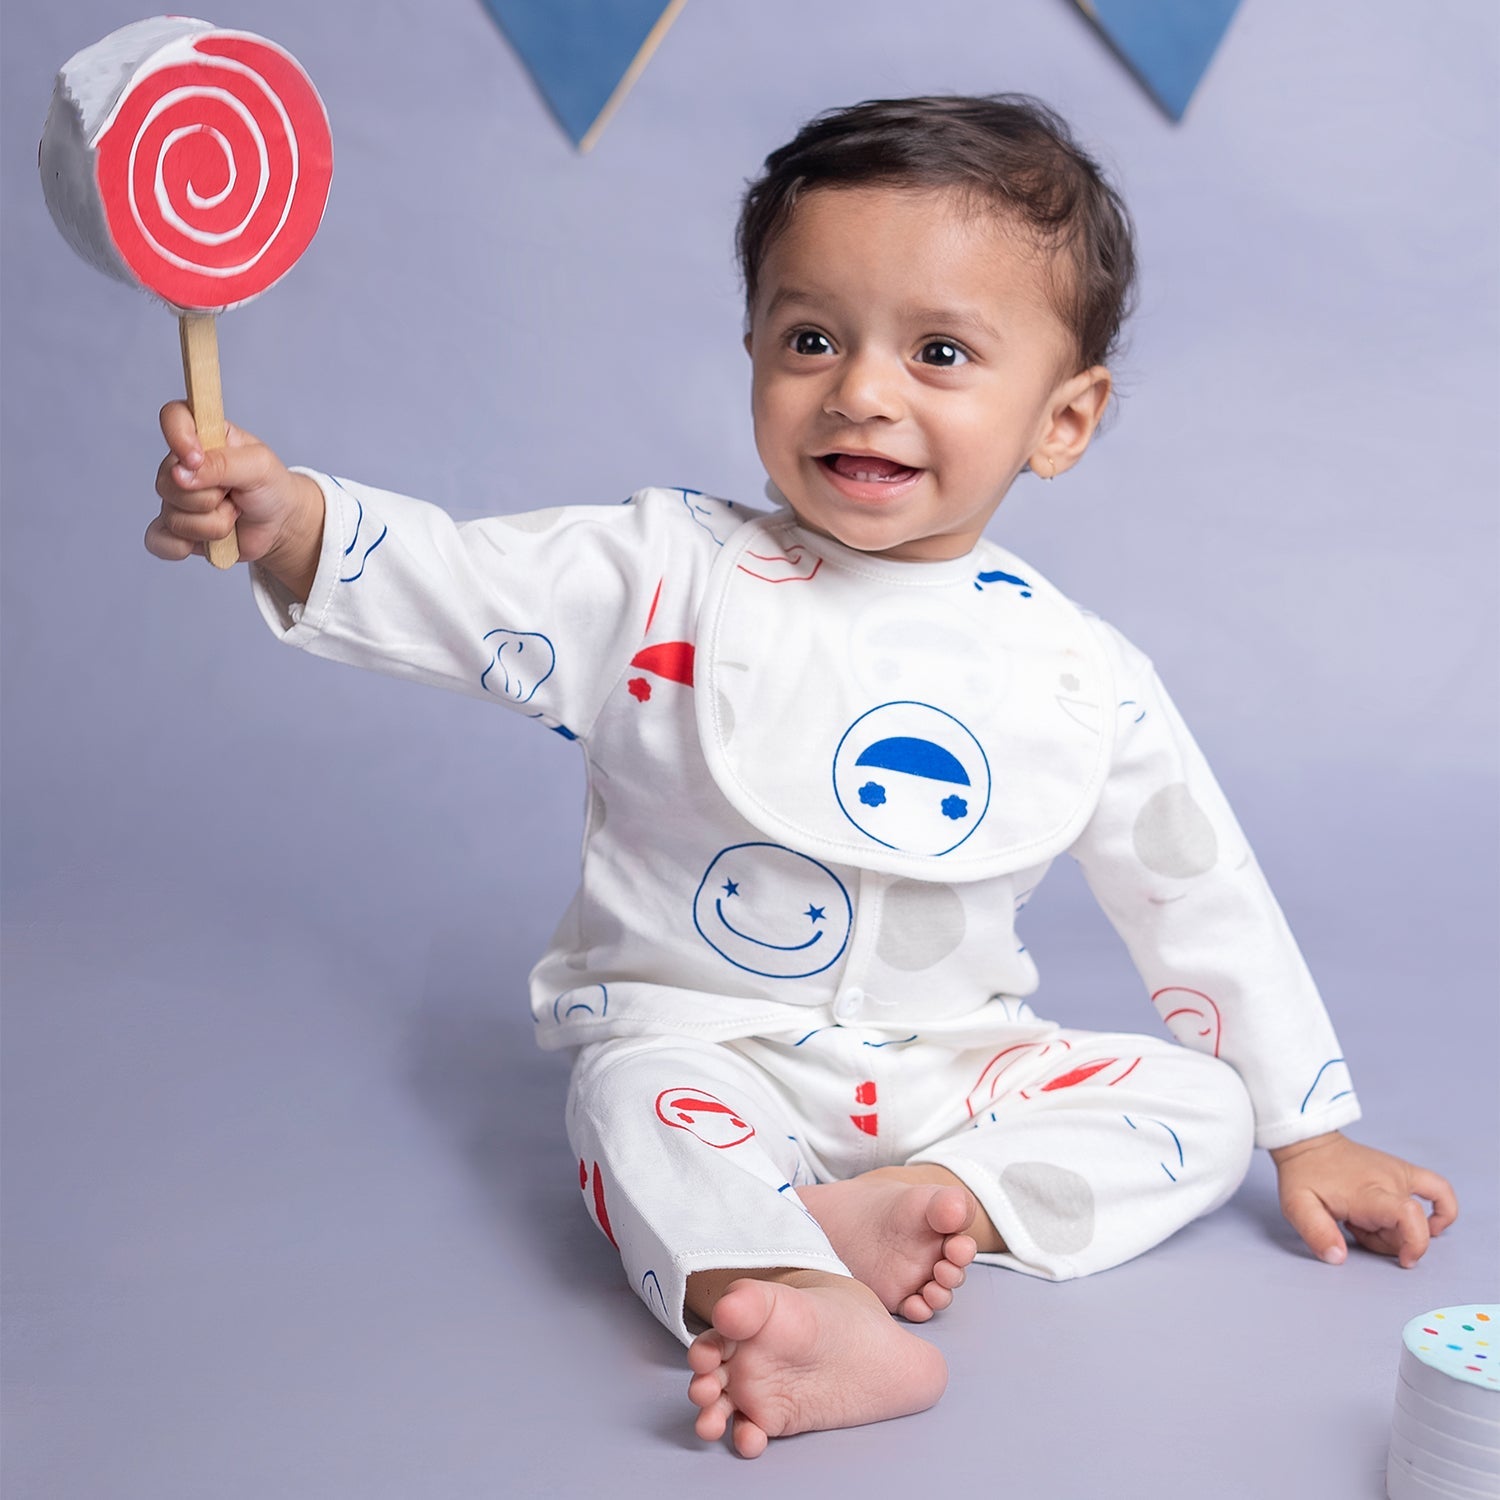 Baby Moo Smiley Print Cap Bib Pyjamas 5 Pcs Clothing Gift Set - White